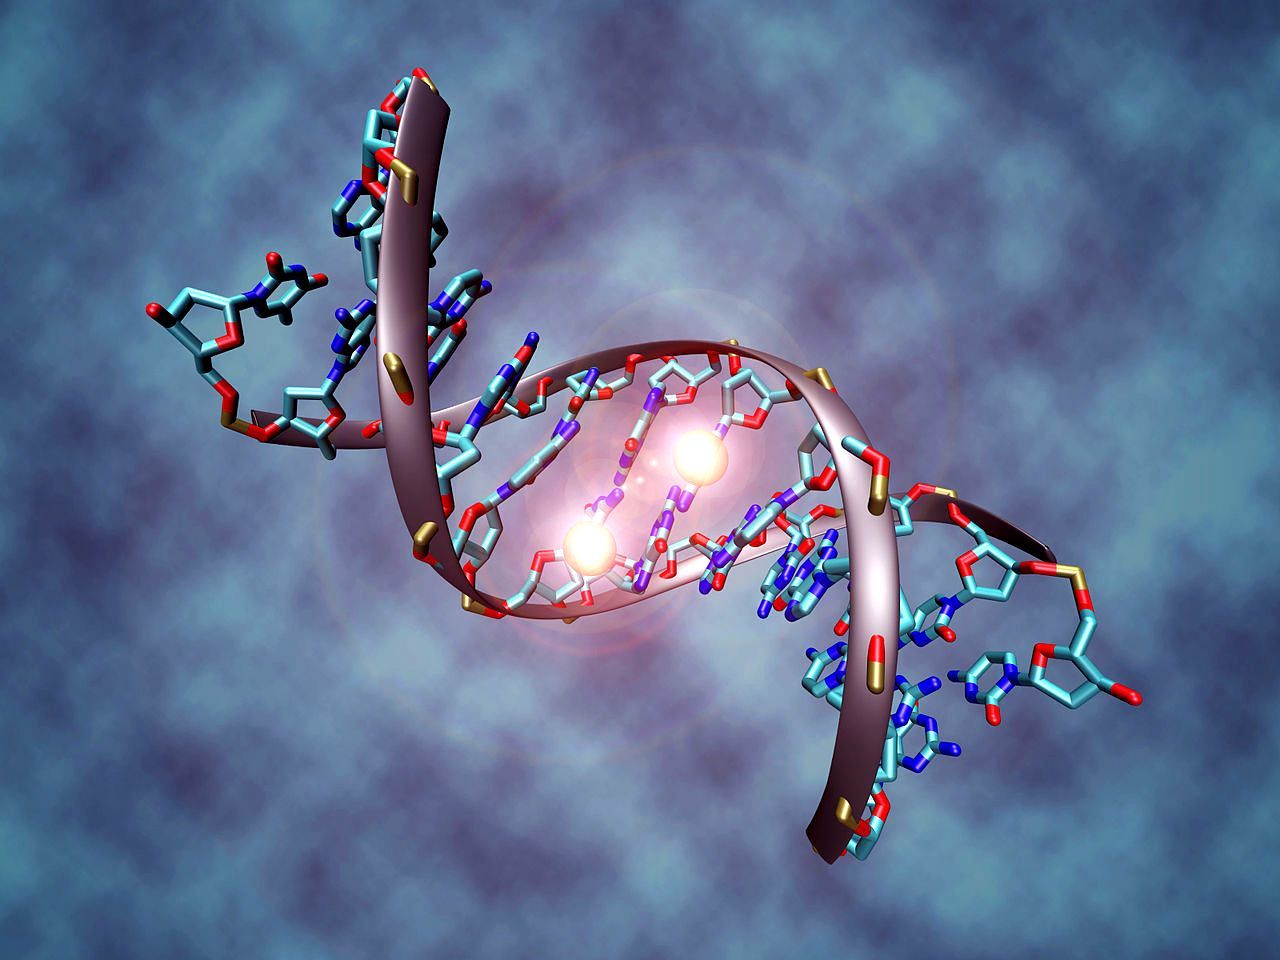 26 ข้อเท็จจริงที่แปลกประหลาดที่สุดเกี่ยวกับ DNA และยีนที่คุณไม่เคยได้ยินเกี่ยวกับ 4